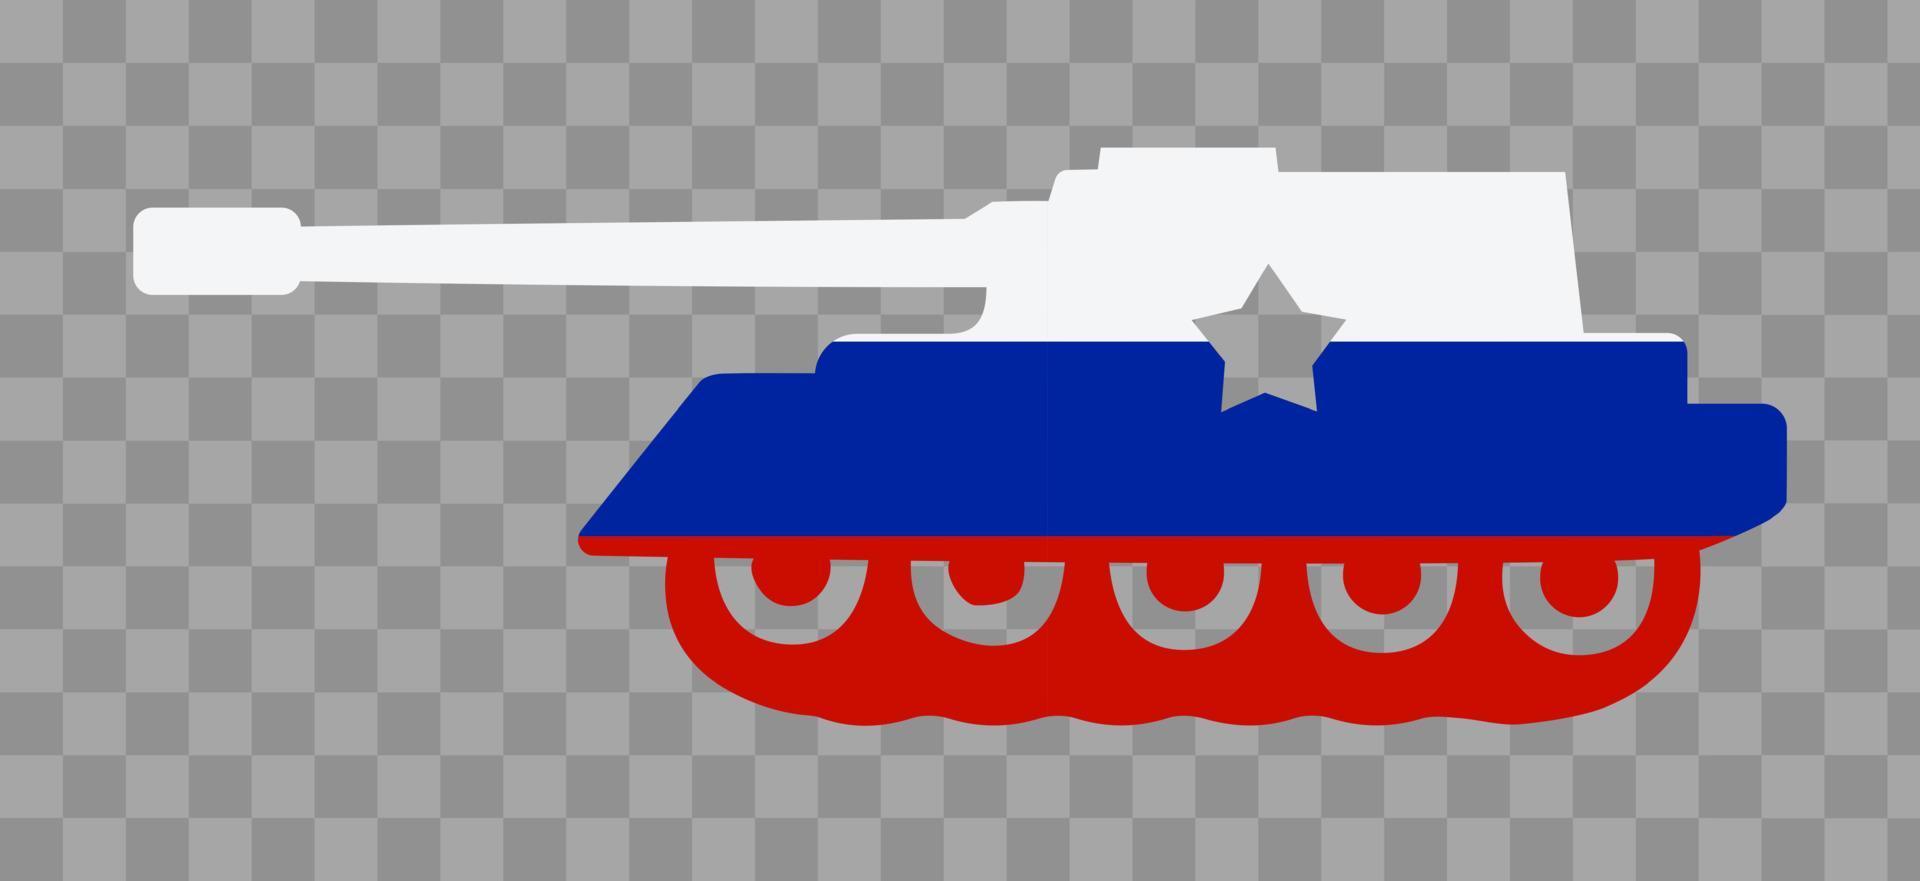 bandera rusa en forma de tanque. ilustración vectorial vector